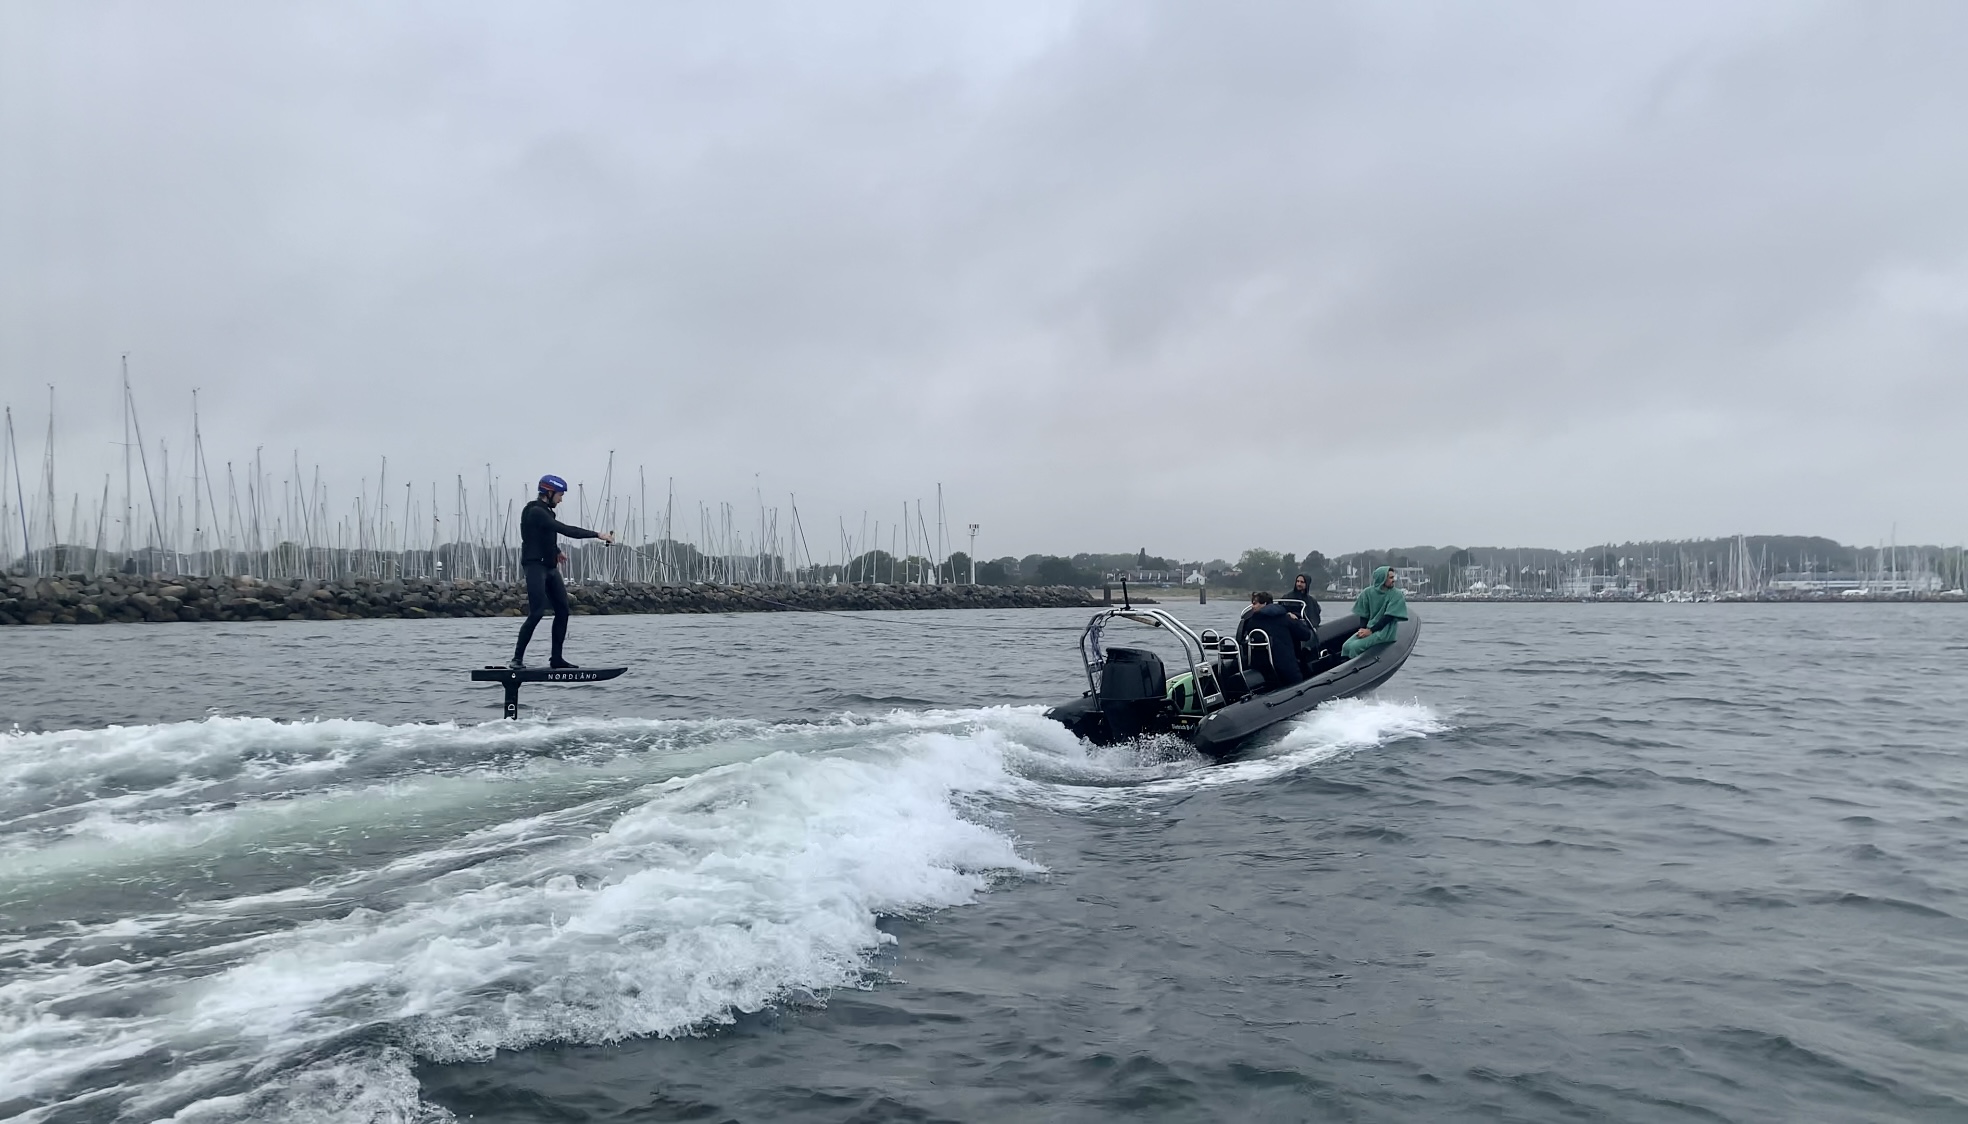 Surf-Foilen hinter dem Motorboot auf der Ostsee vor Schilksee